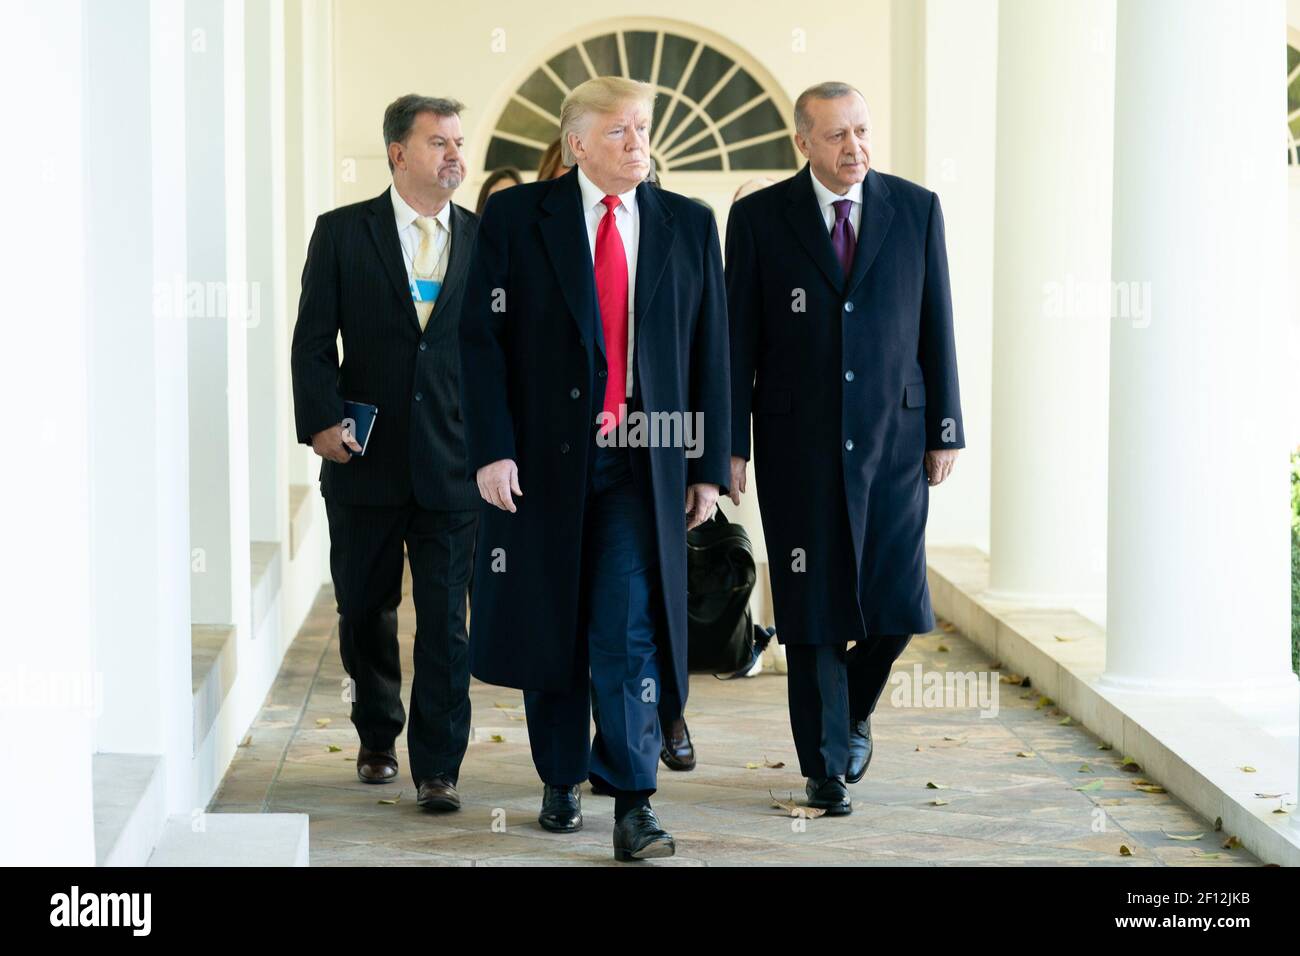 Le président Donald Trump marche avec le président turc Recep Tayyip Erdogan mercredi 13 2019 novembre le long de la Colonnade de l'aile ouest jusqu'au bureau ovale de la Maison Blanche. Banque D'Images